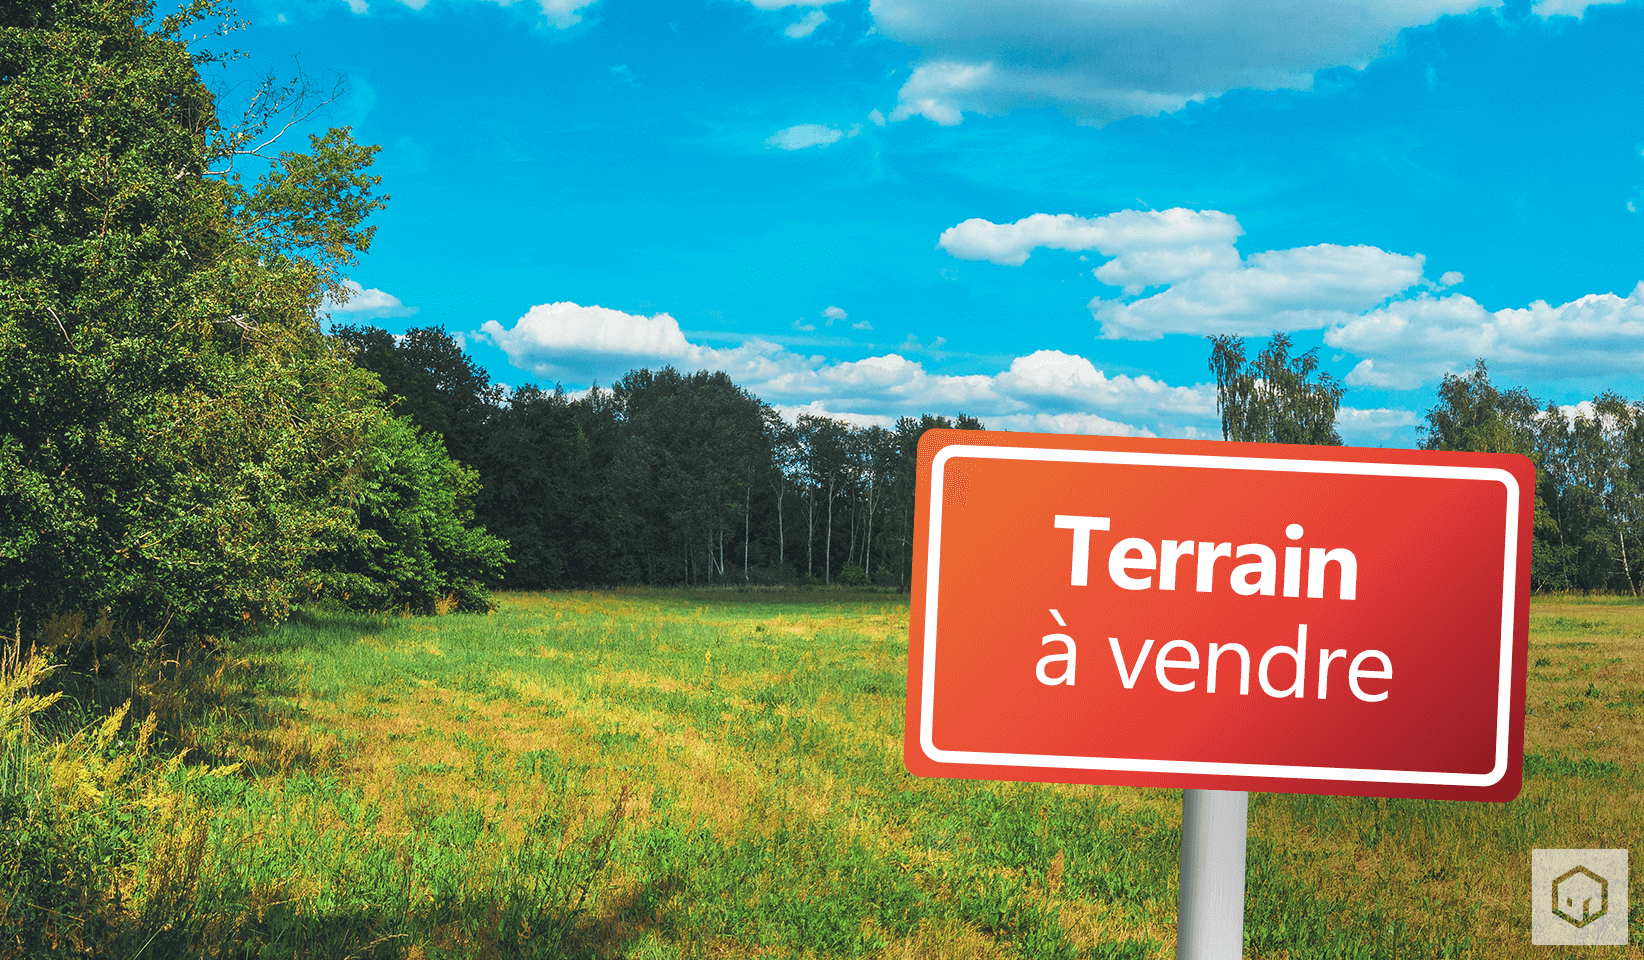 Terrain à vendre 230.00m² à Saint-Aubin-des-Landes - Photo 1